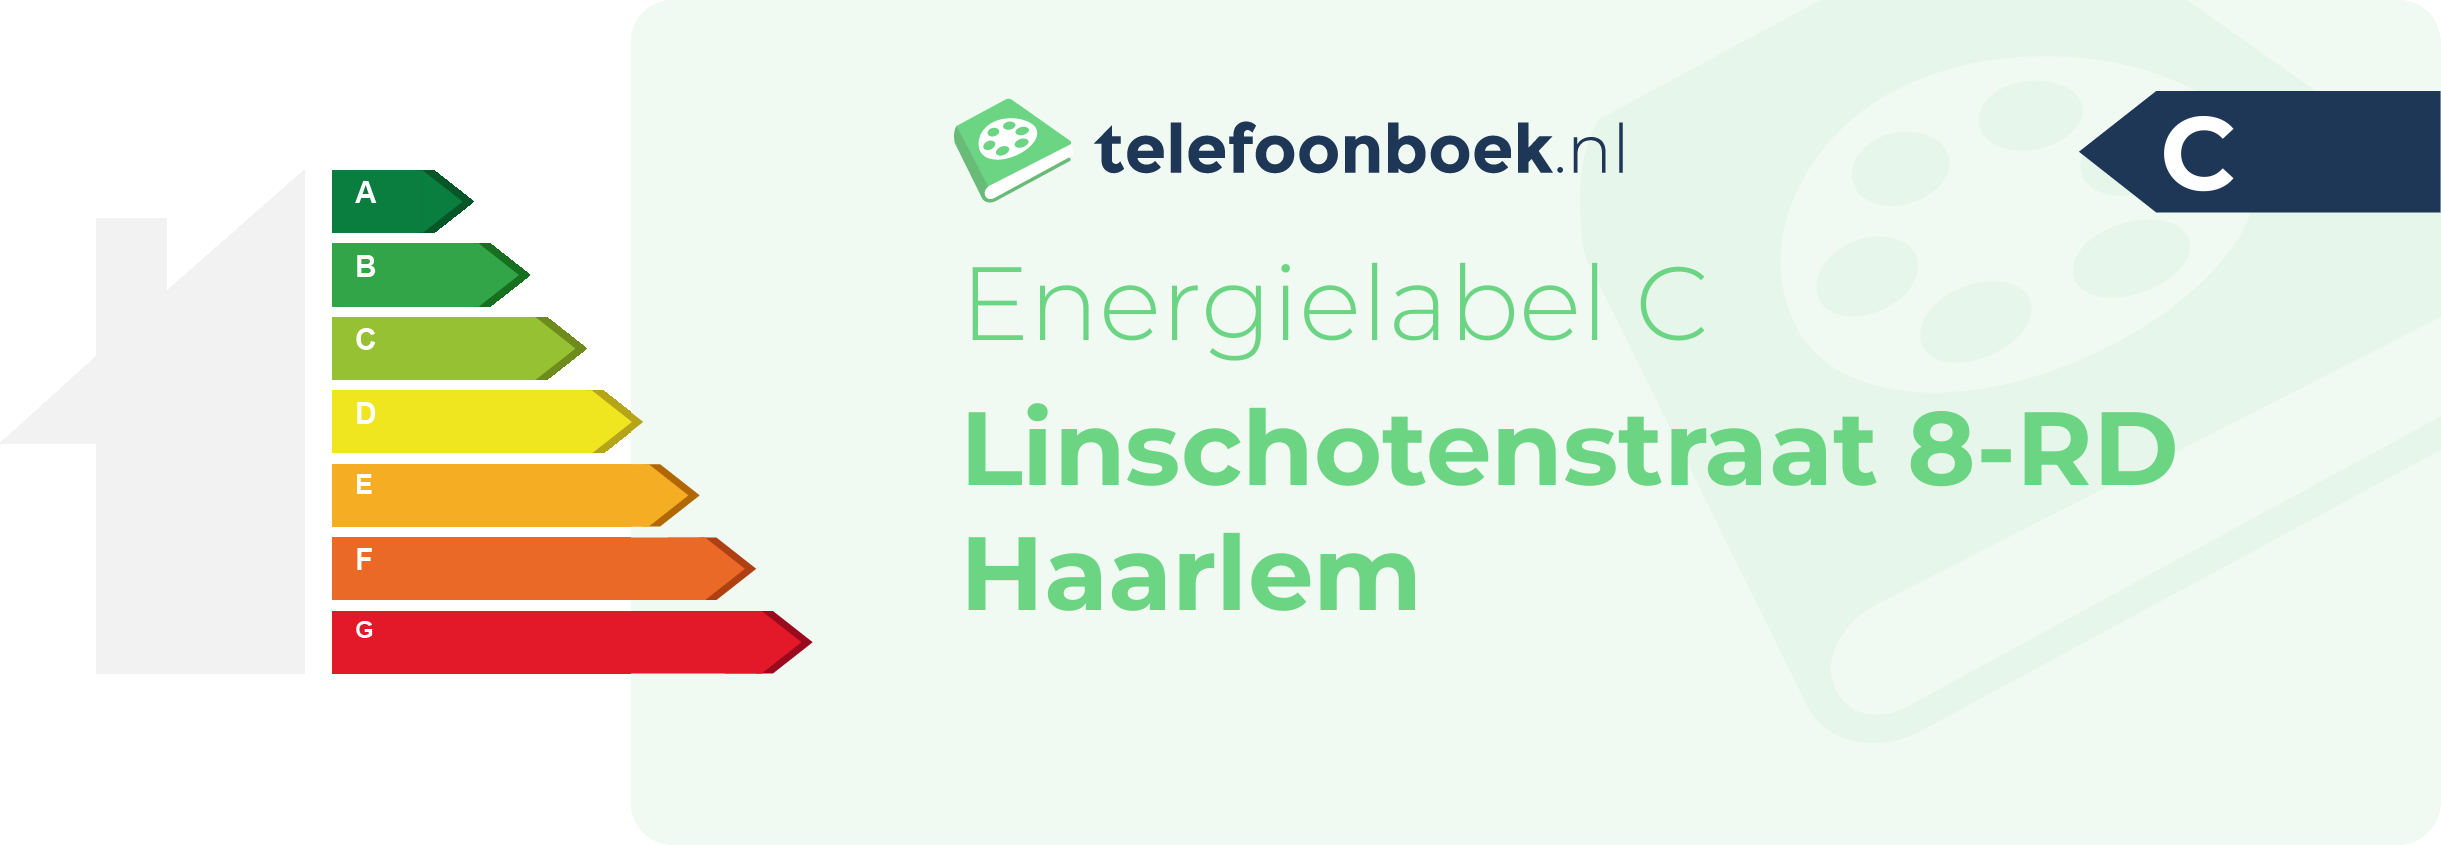 Energielabel Linschotenstraat 8-RD Haarlem